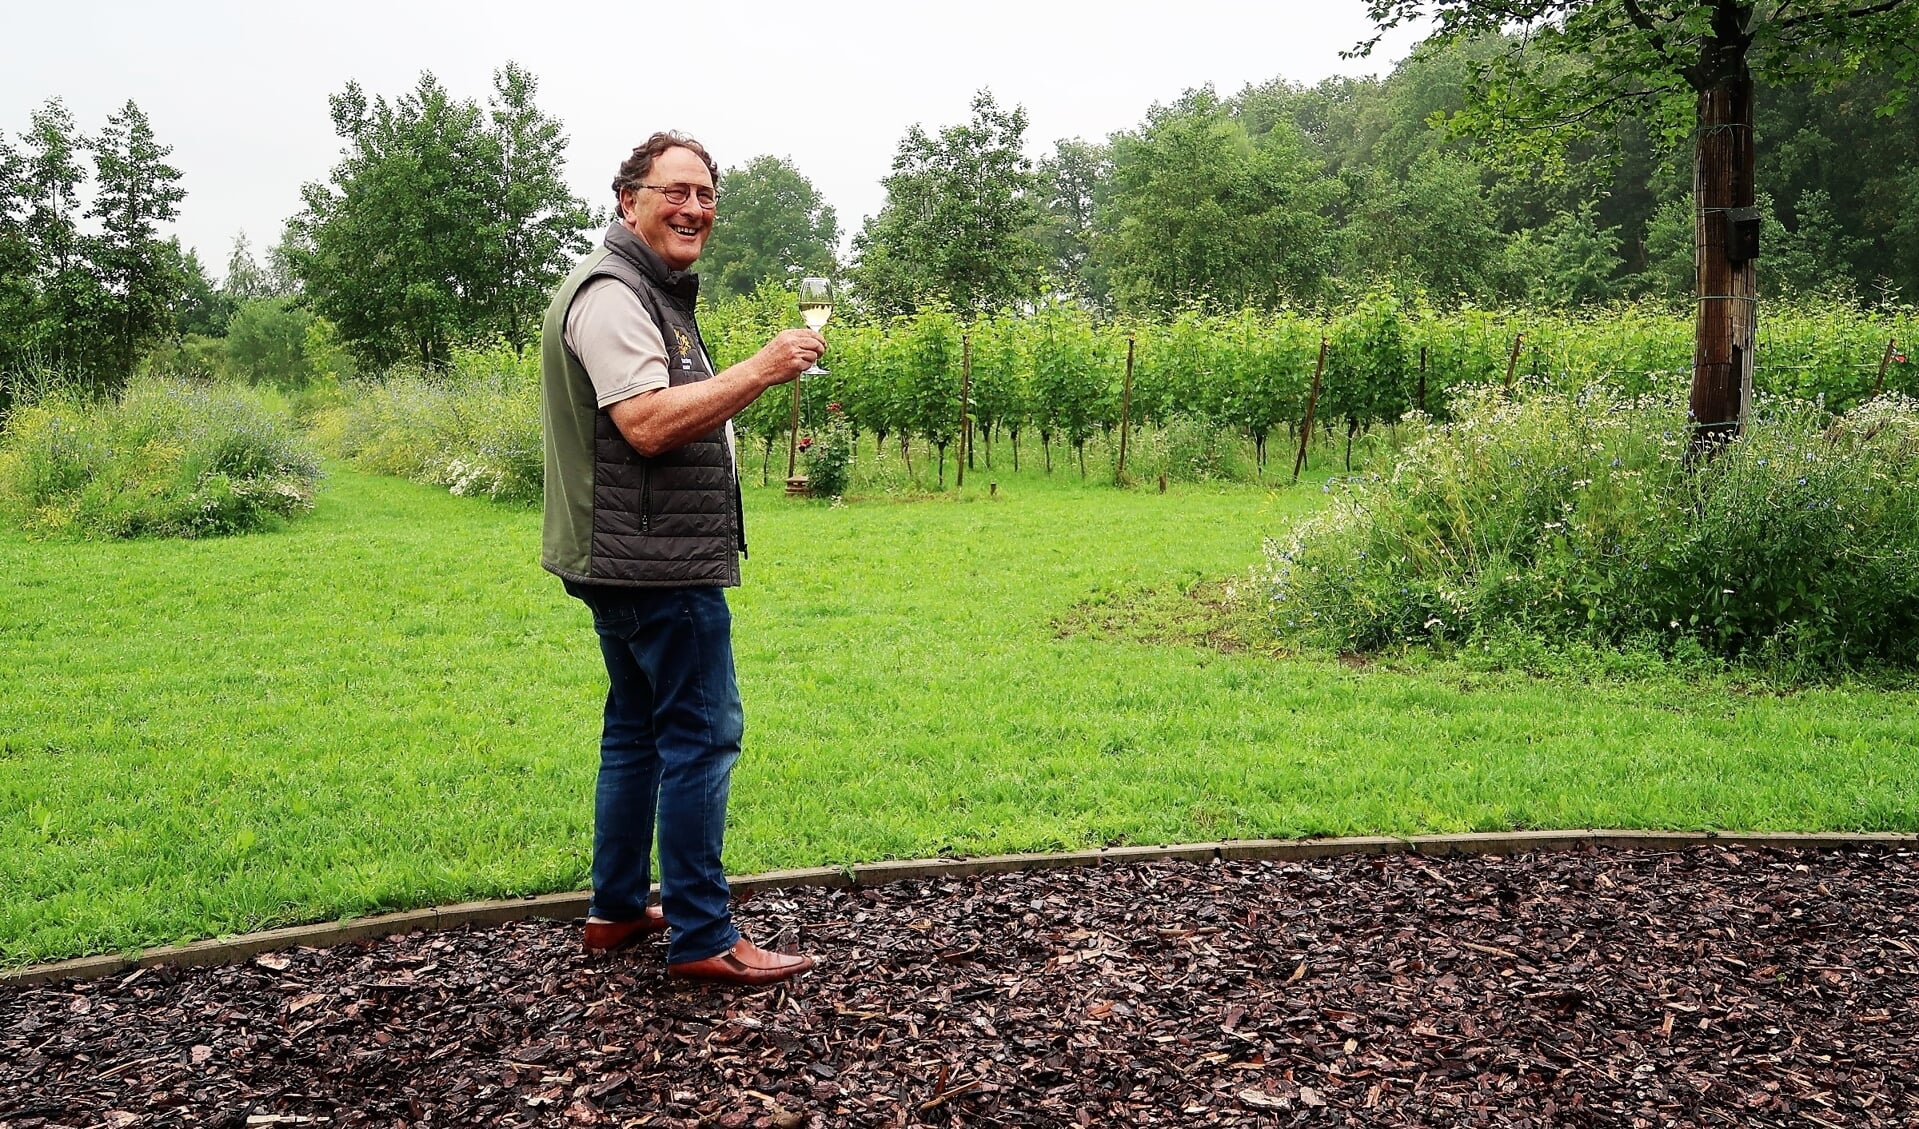 Jules Moormann met een glas wijn van eigen bodem op het buitenverblijf ‘Hof Detharding’ in Harreveld. Foto: Theo Huijskes